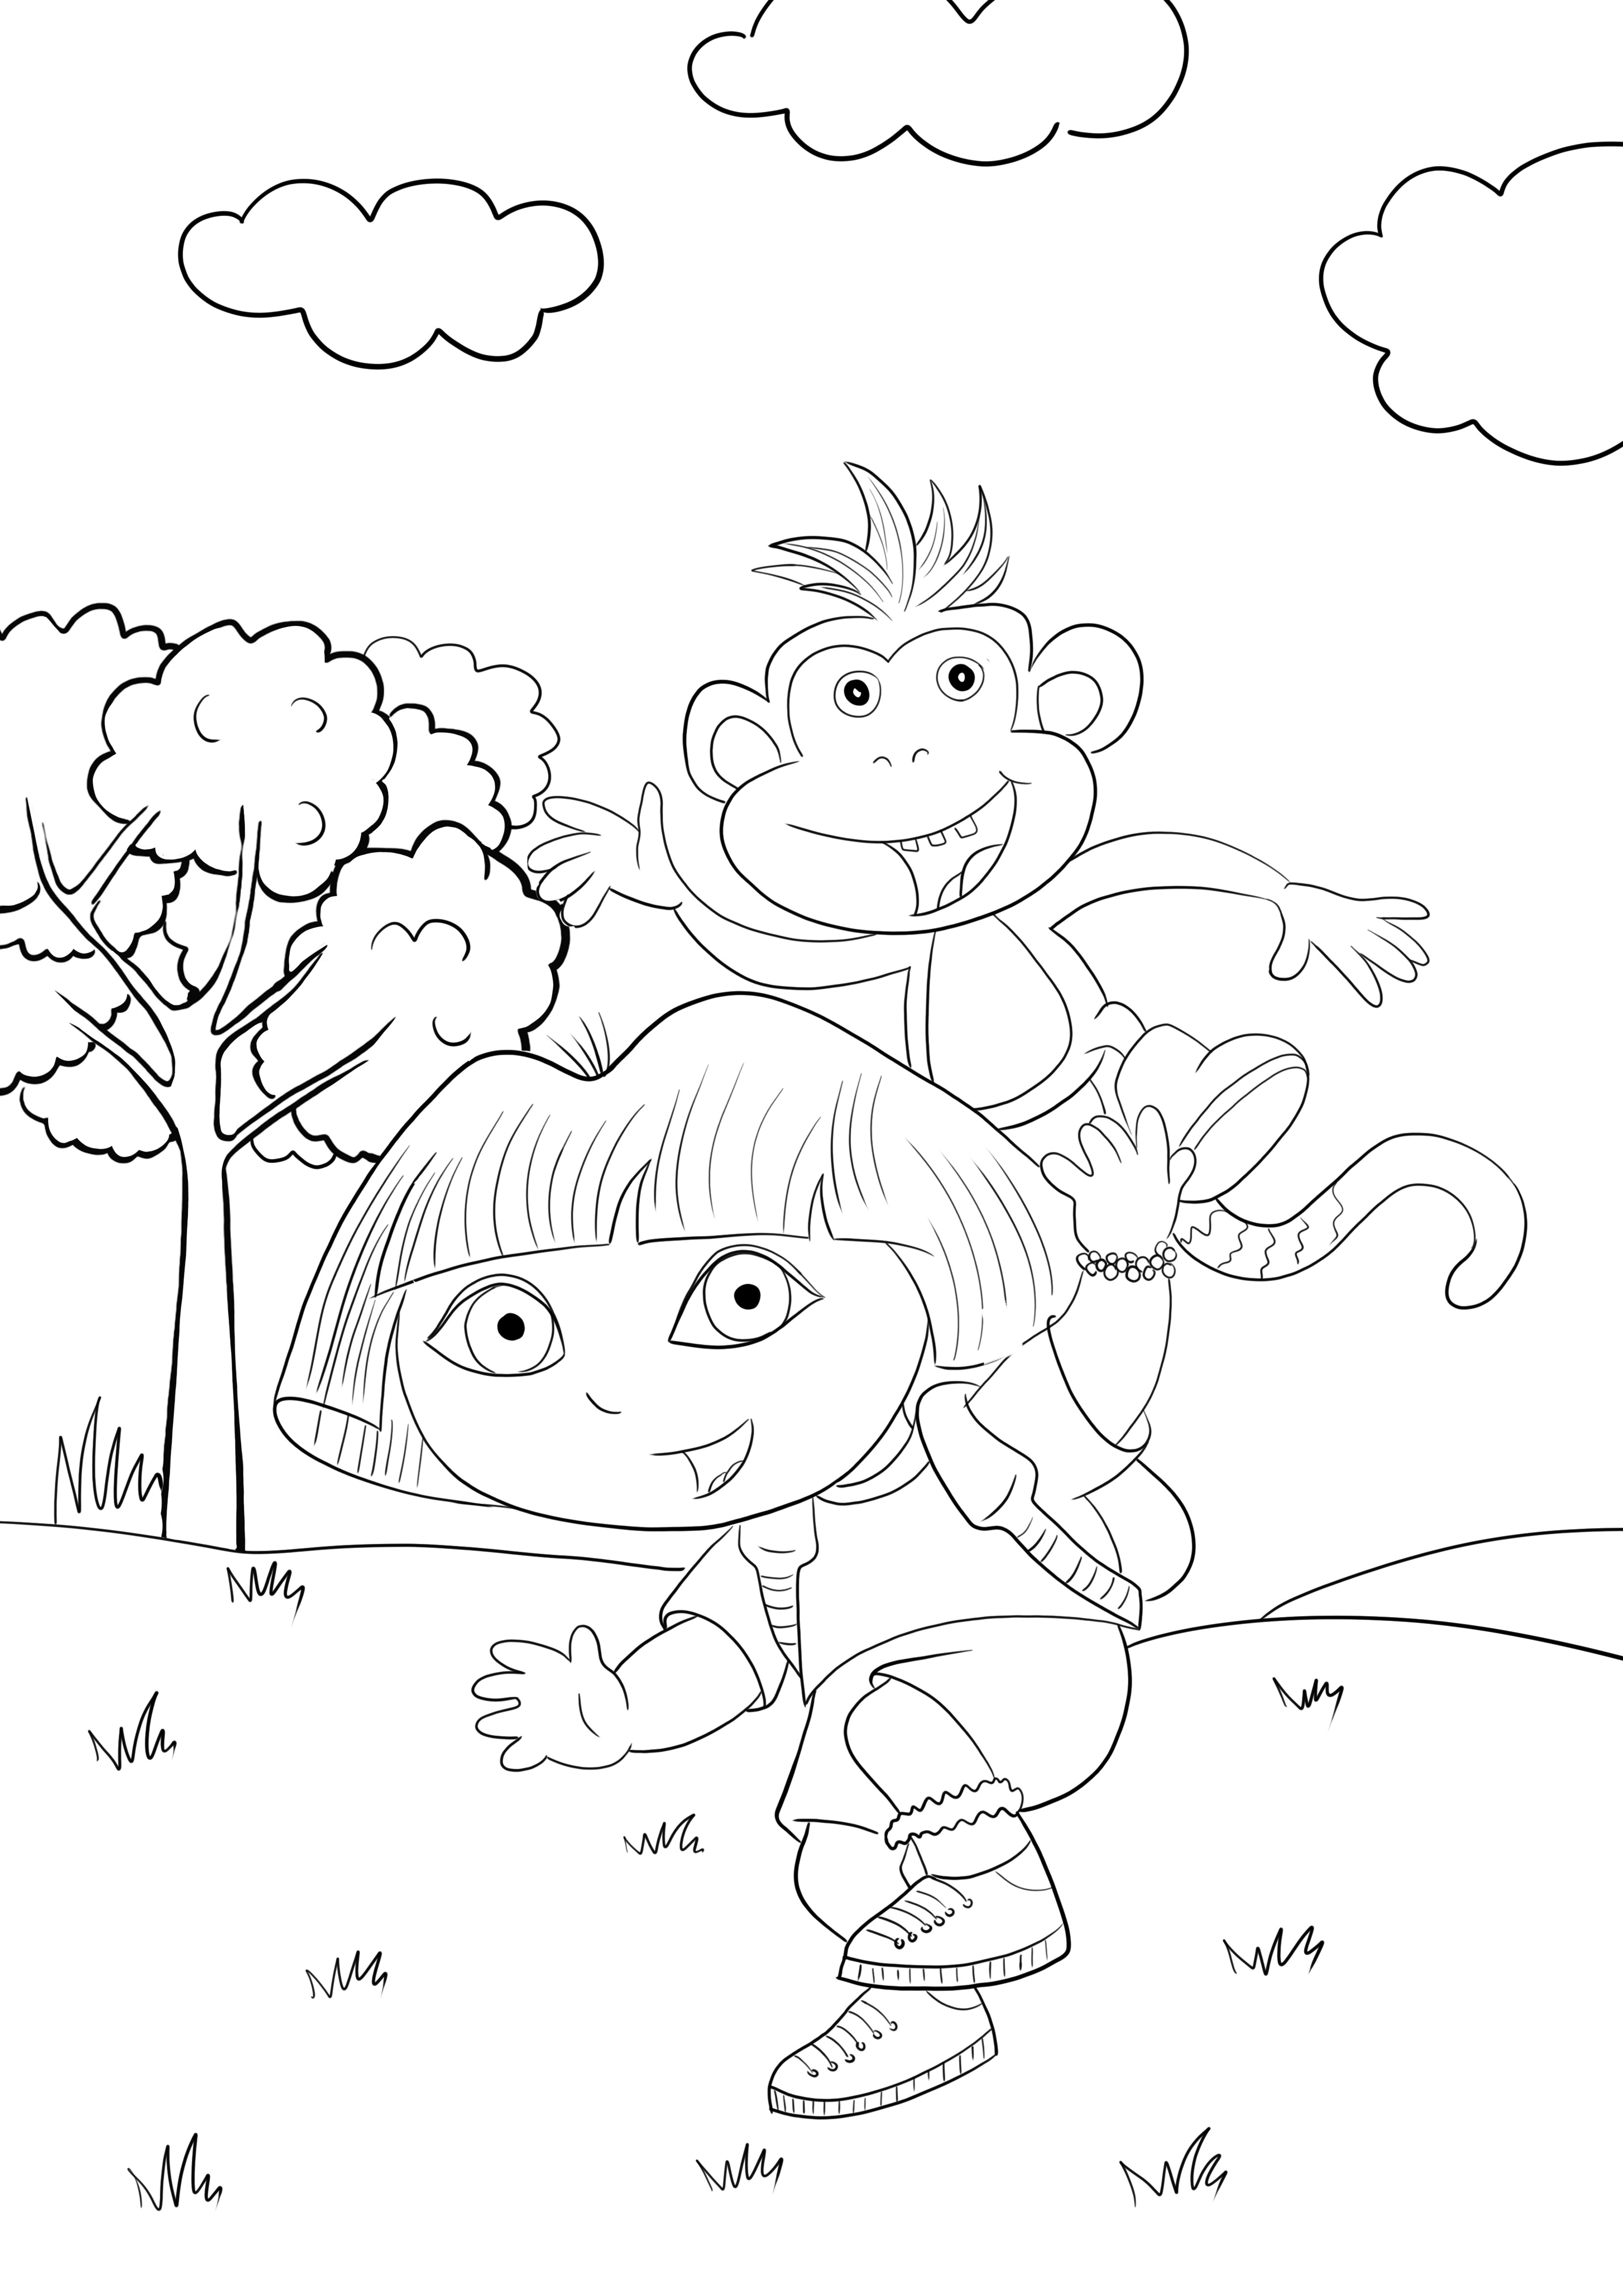 Dora i Benny małpa darmowe drukowanie i kolorowanie obrazu